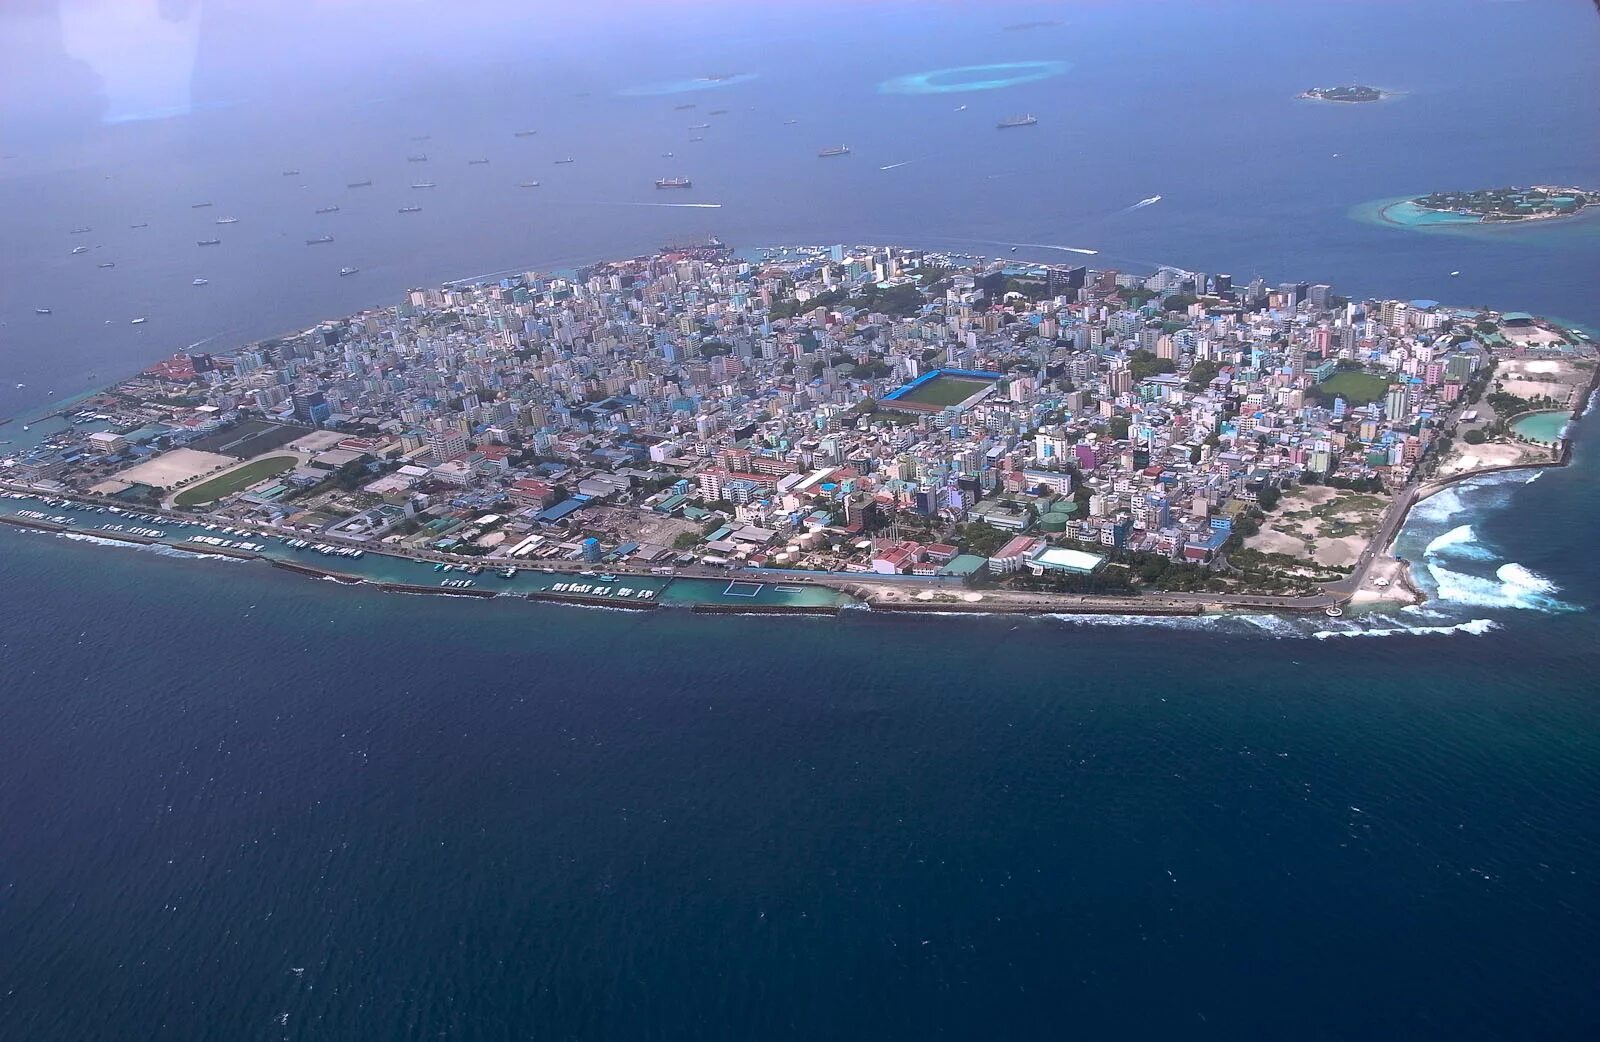 Male город. Город Мале Мальдивы. Мале город в океане столица Мальдивской Республики. Столица Мальдив - город Мале.. Население Мале Мальдивы.